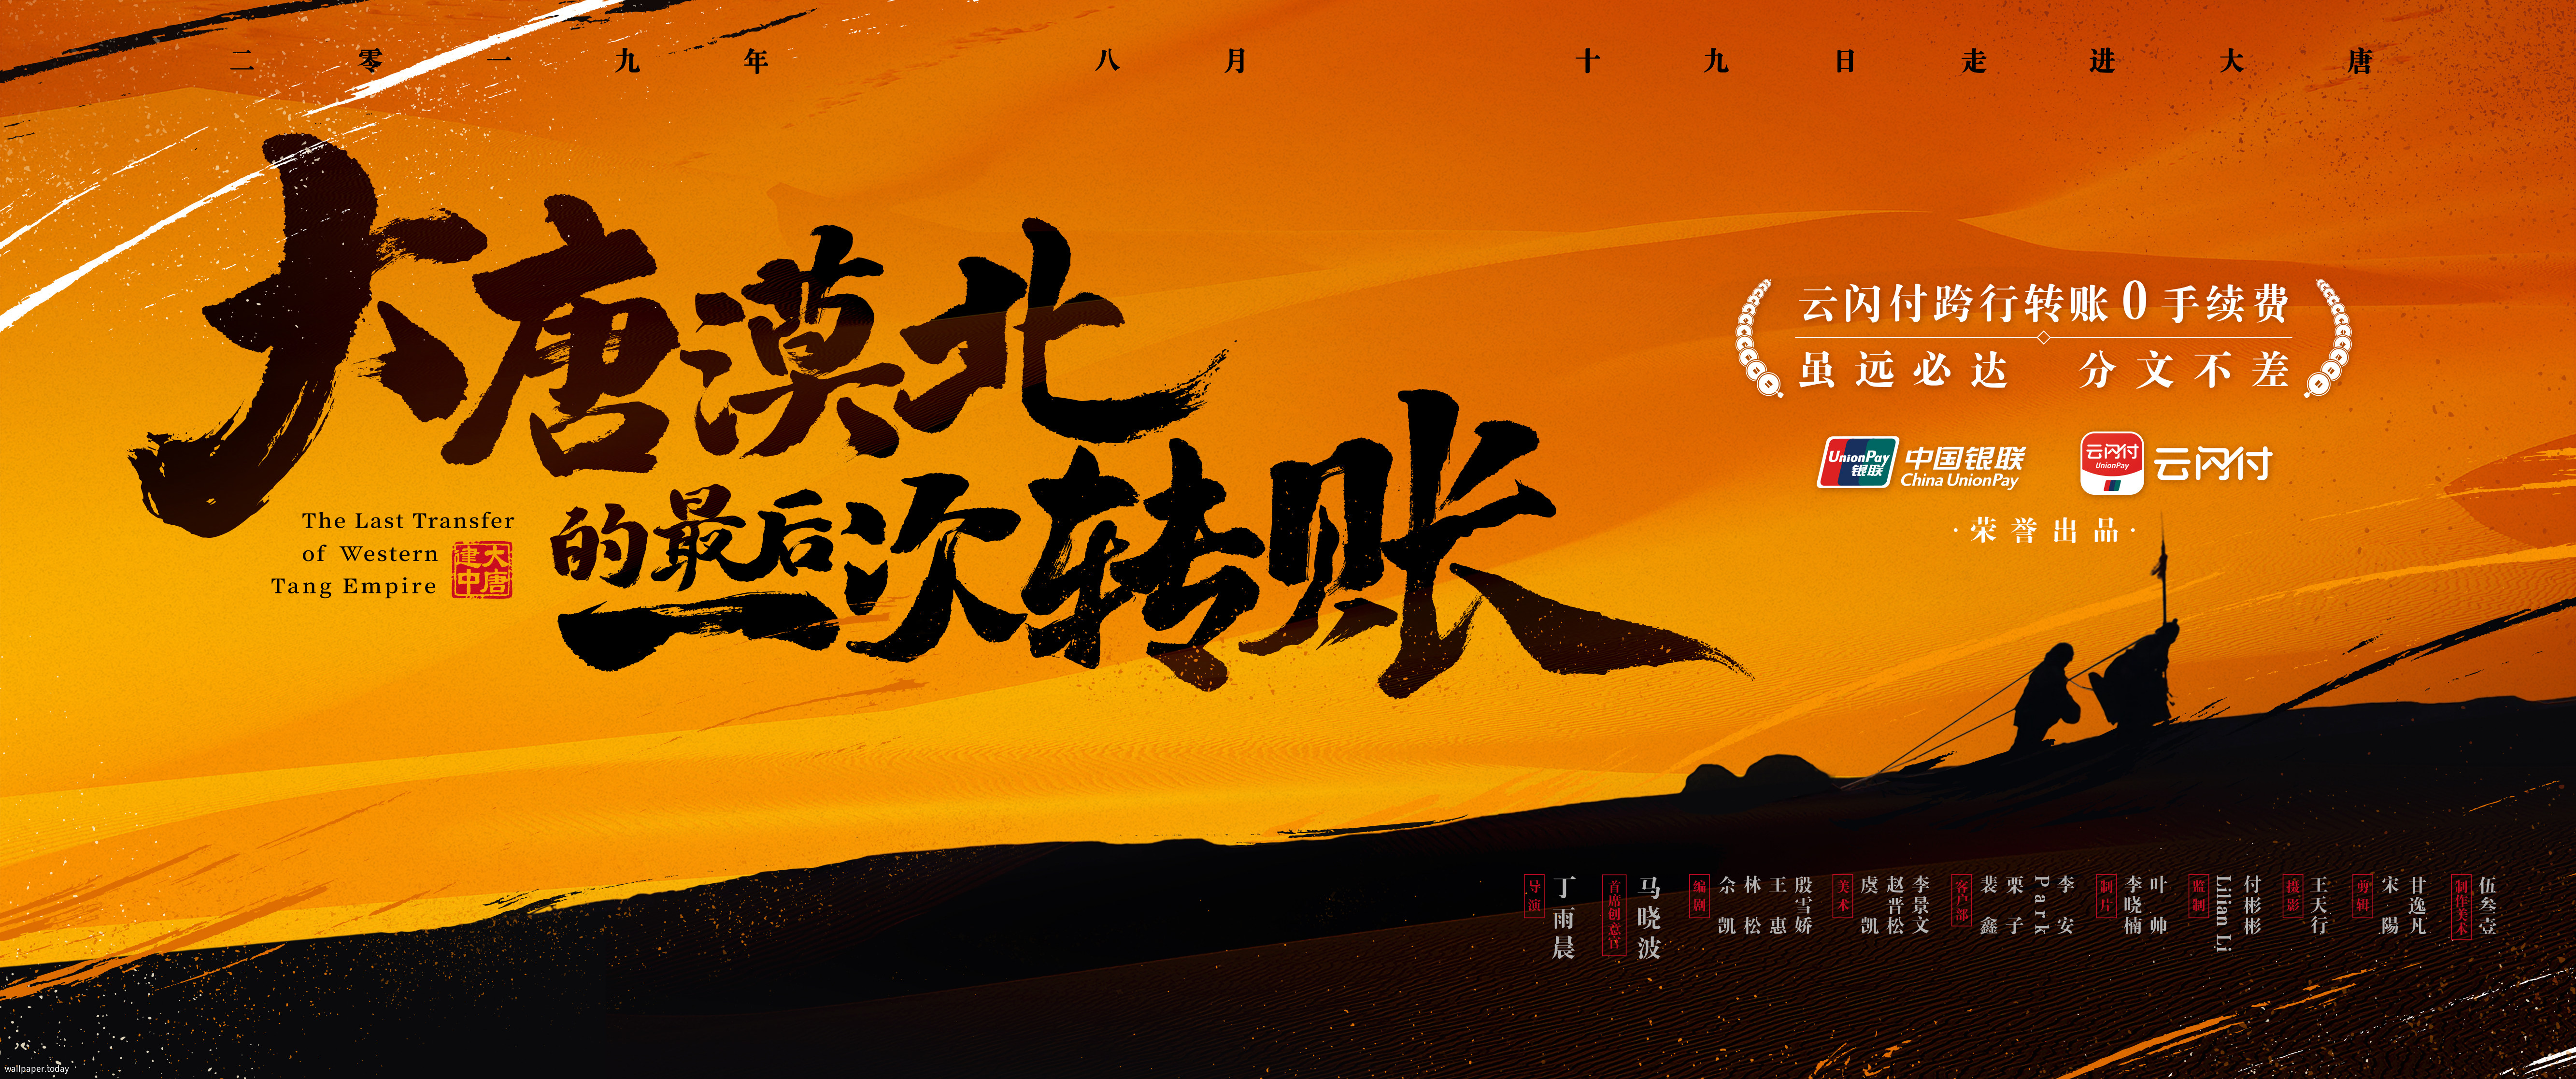 大唐漠北的最后一次转账 - 中国银联广告片-WallPaper.Today